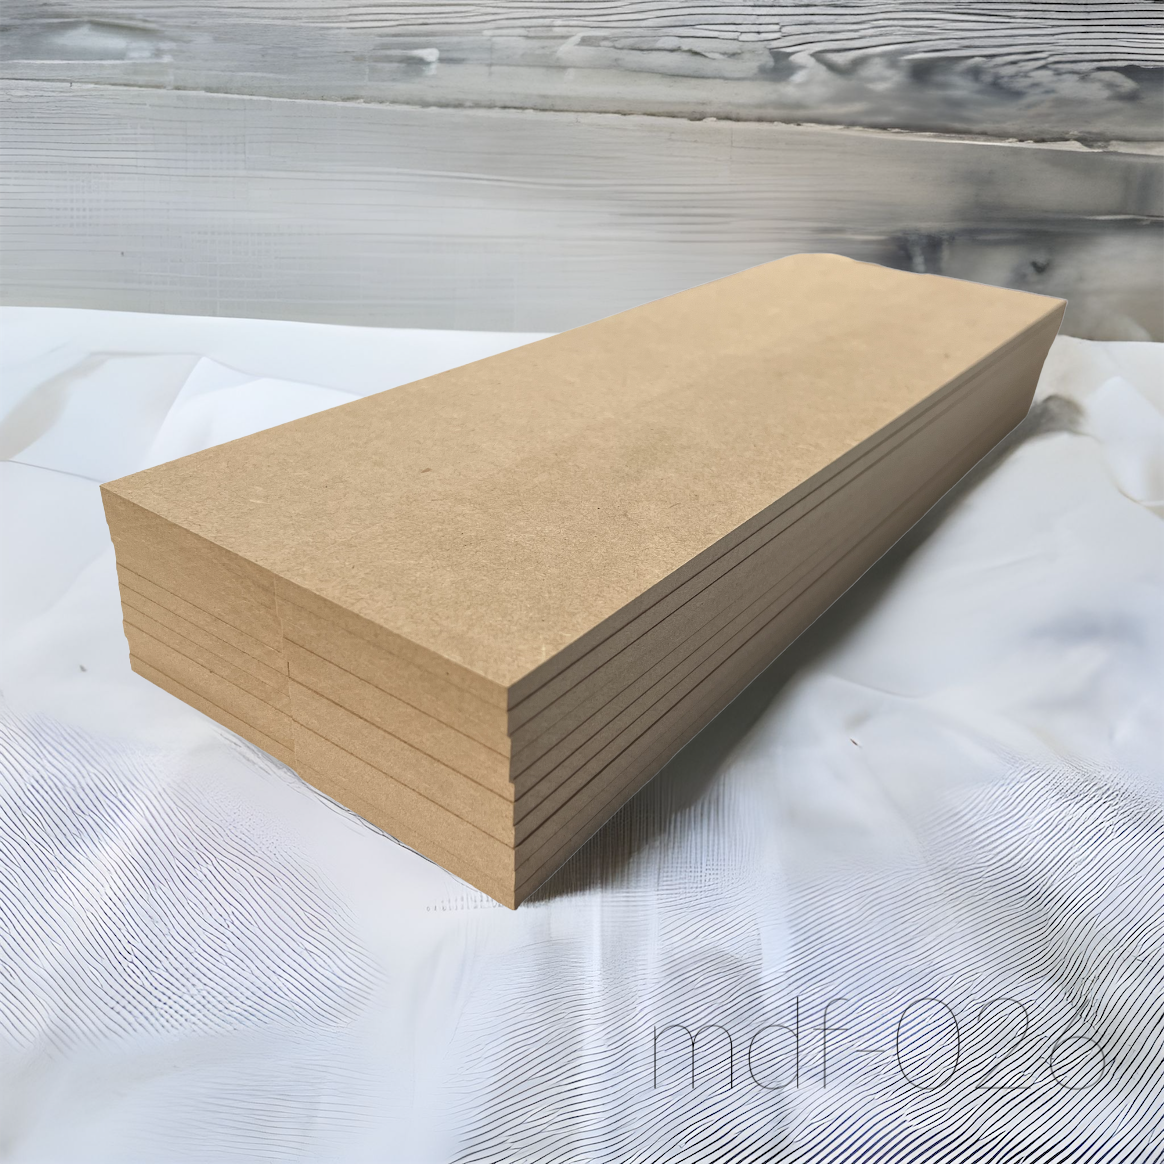 木材 MDF材 15mm厚 900mm×1800mm (3×6・サブロク) 1枚 MDFボード MDF板 直線カットオーダー対応(10回無料) 板 diy 材料 (事業所向け) - 1